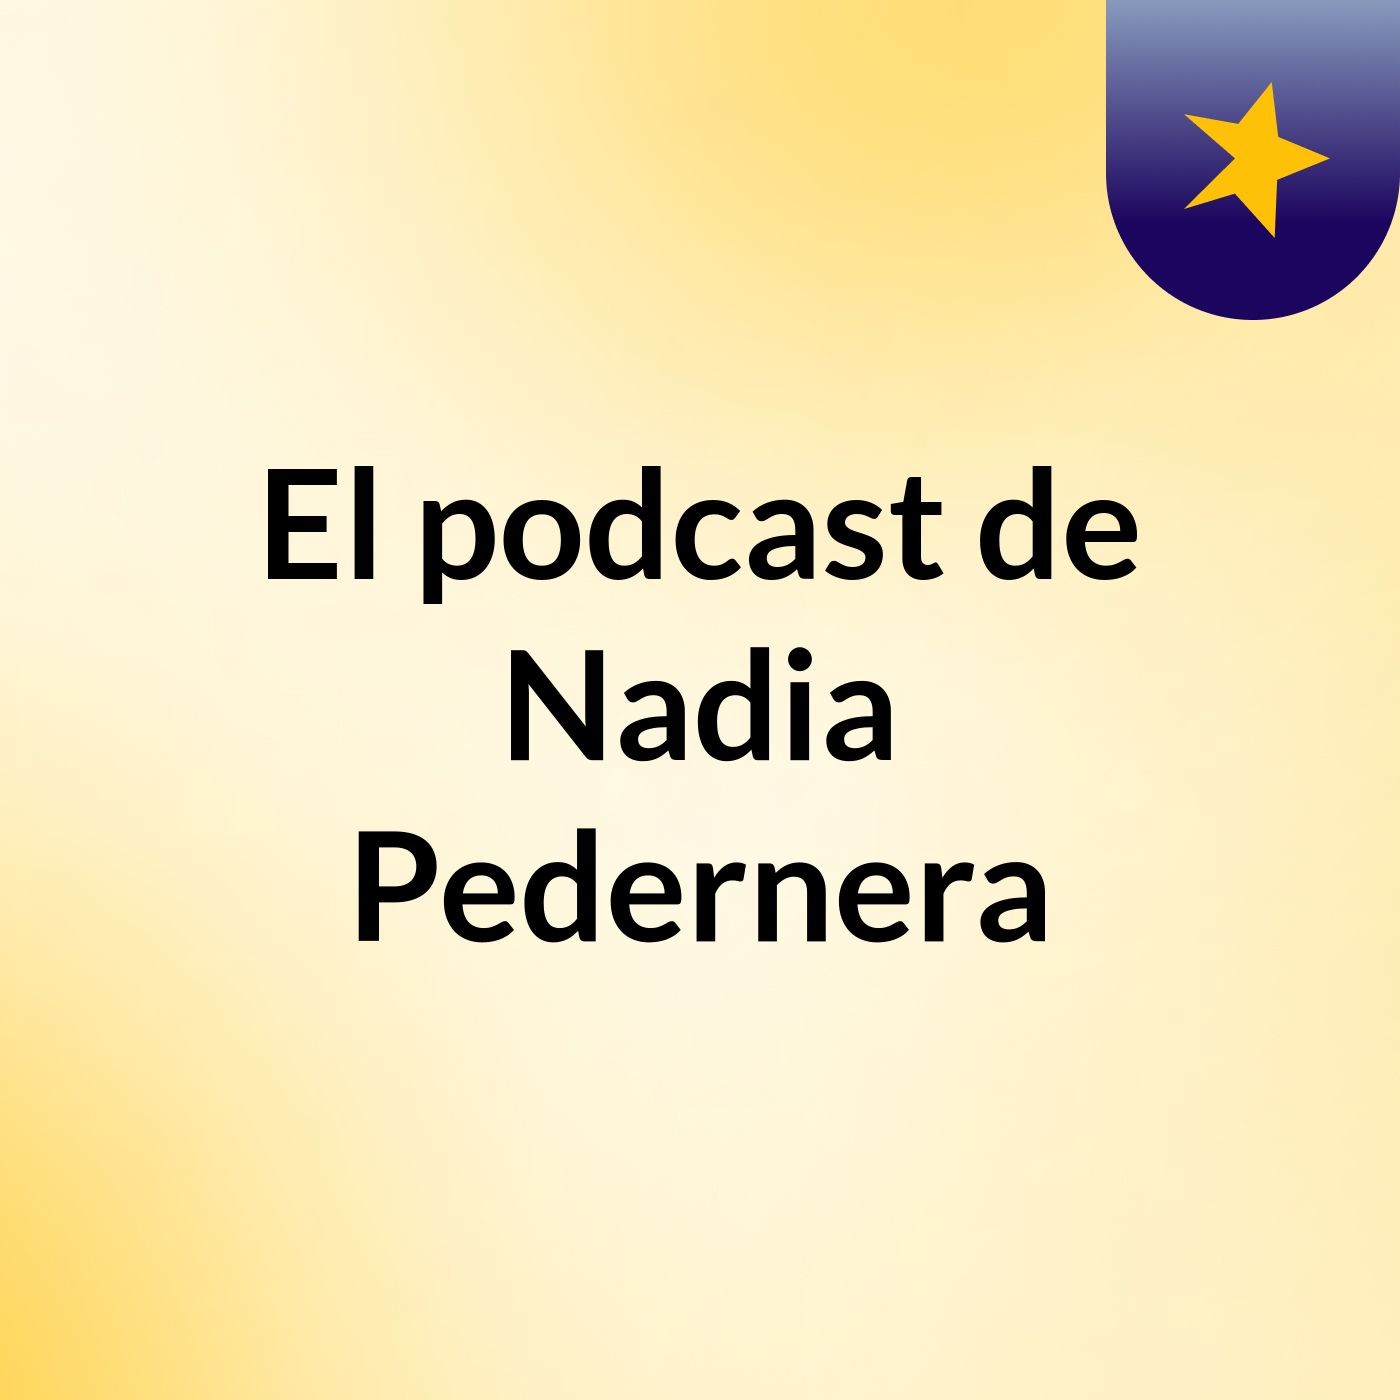 Episodio 7 - El podcast de Nadia Pedernera